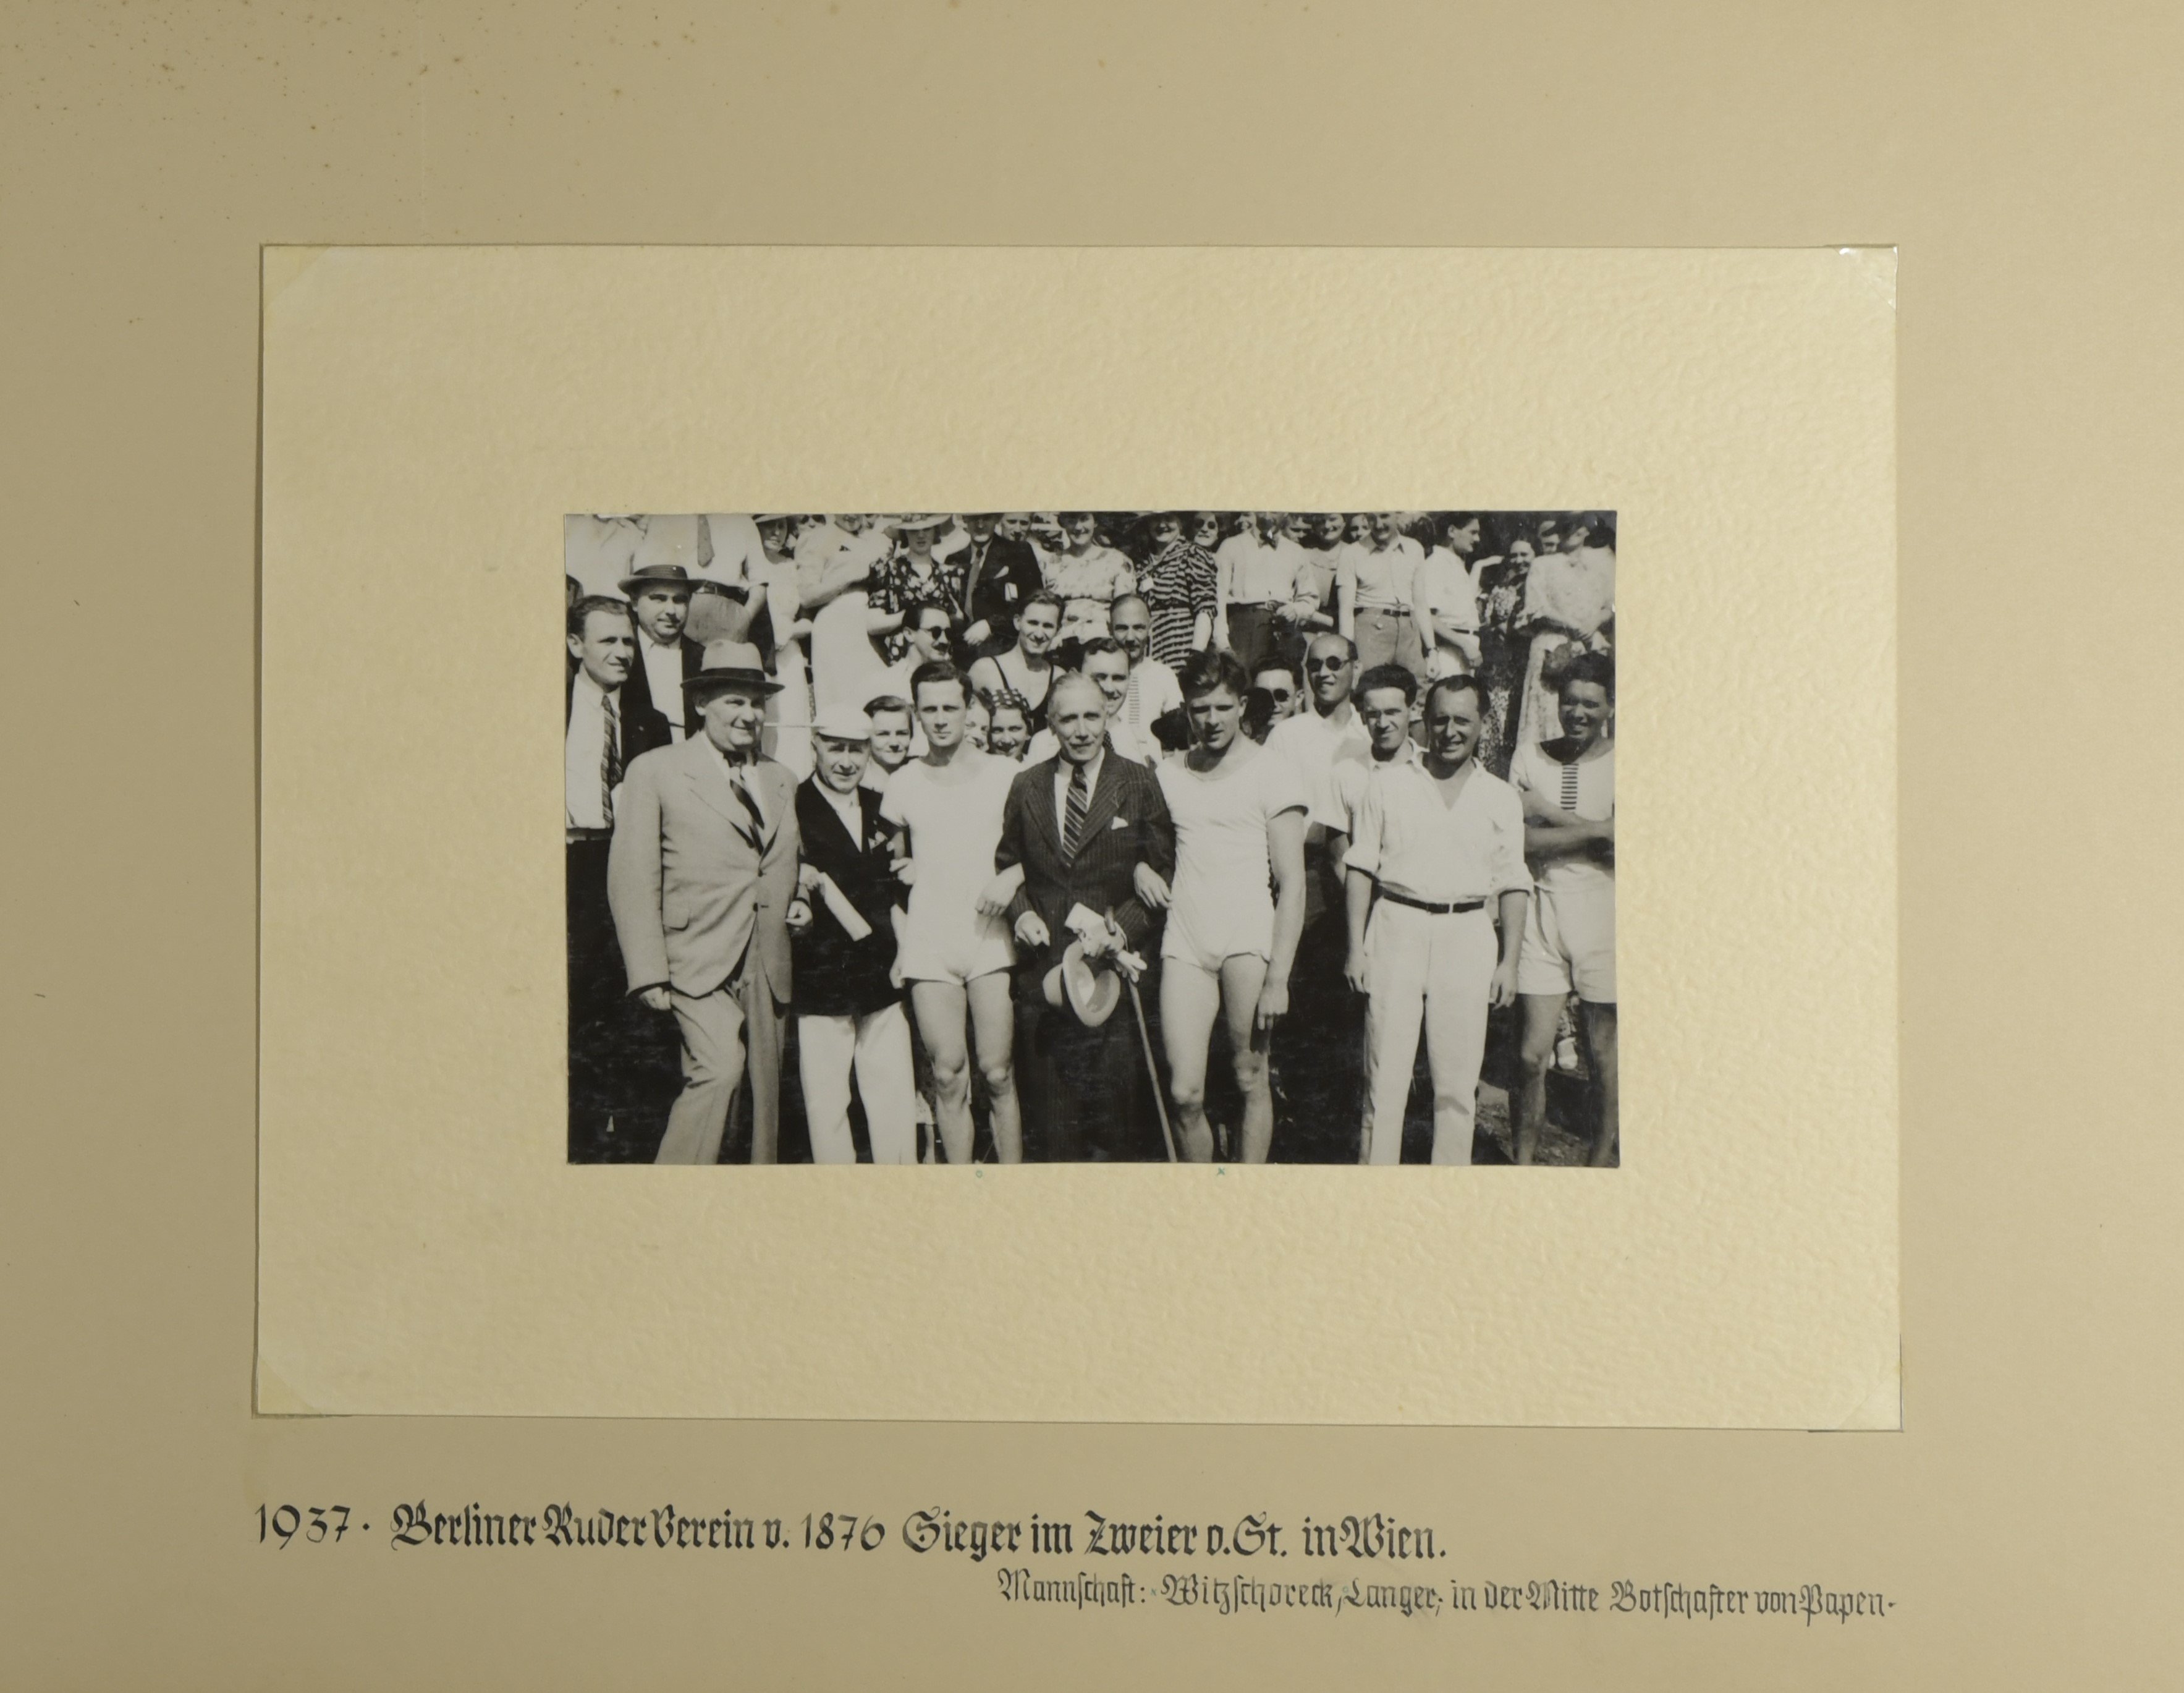 Album des Berliner Ruder-Vereins von 1976 e.V.; Sieg im Zweier in Wien 1937 (Sportmuseum Berlin CC0)